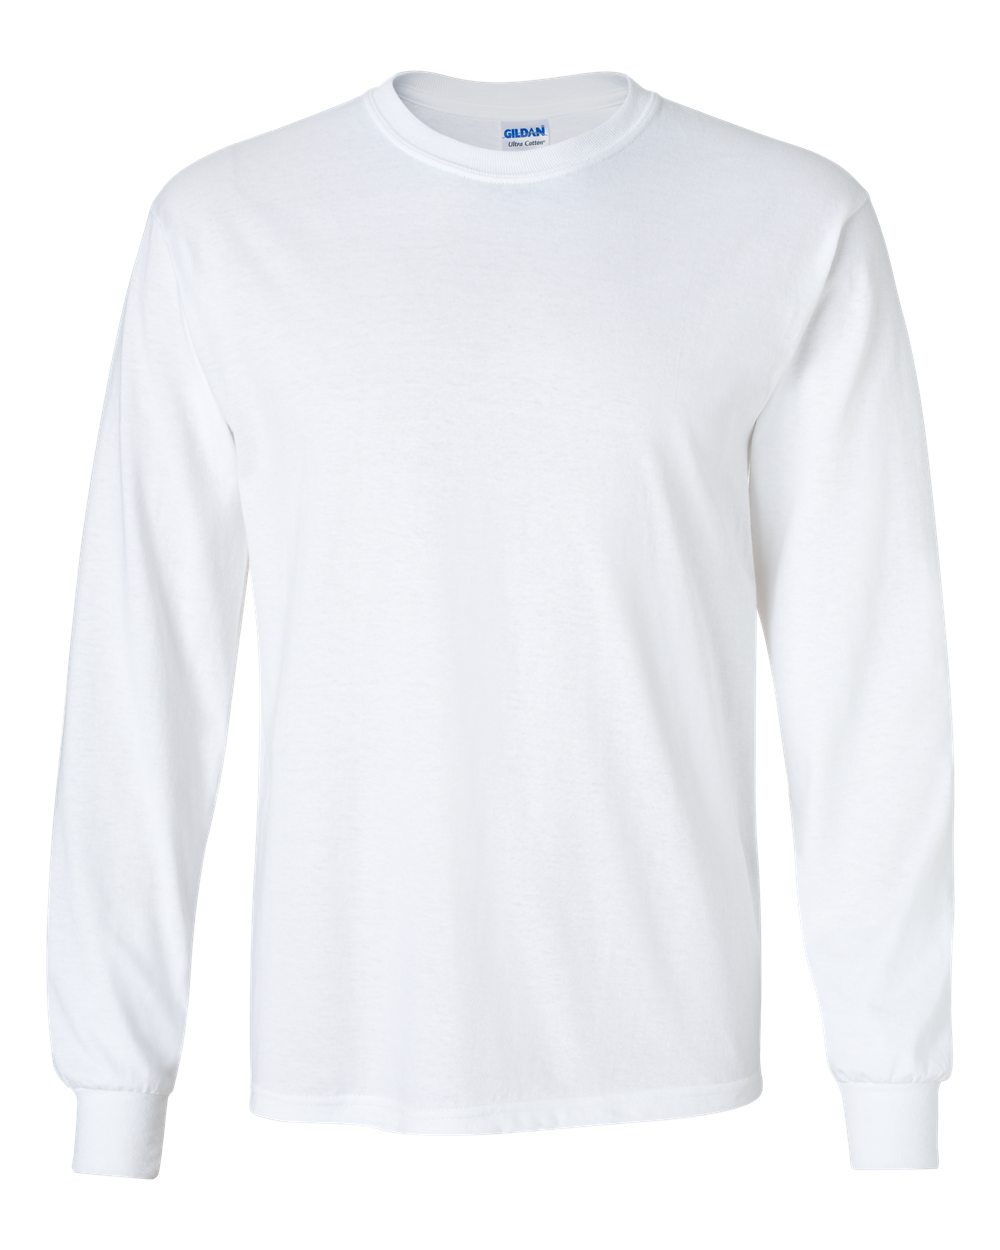 Typisch Getand Eigenlijk Ultra Cotton® Long Sleeve T-Shirt - Gildan 2400 | Clothing Shop Online